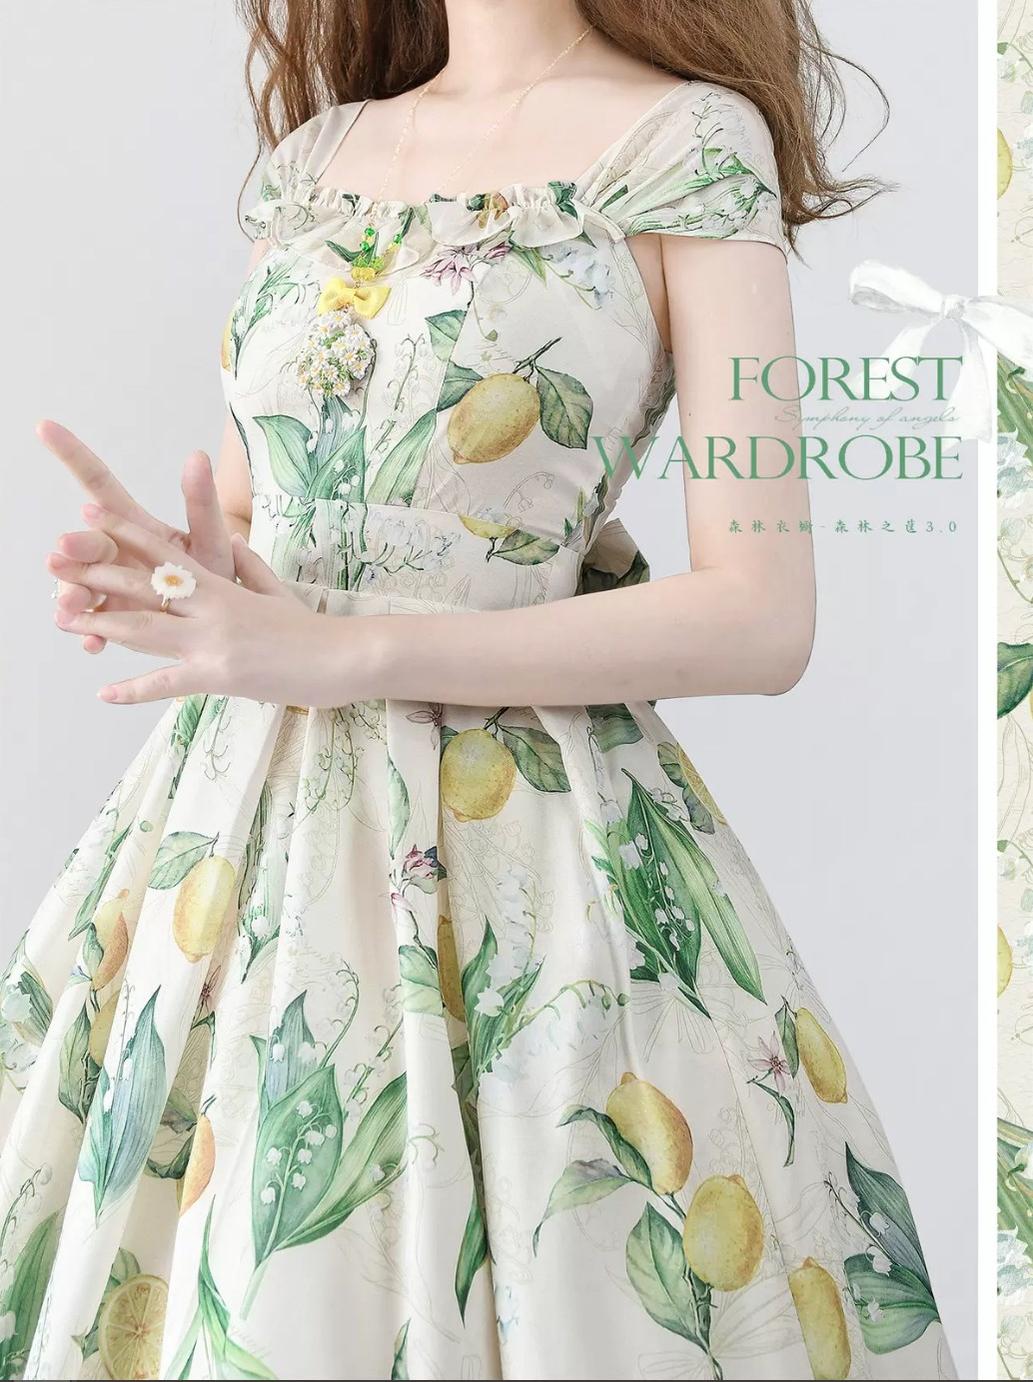 Forest Wardrobe~Forest Basket 3.0~Vintage Lolita JSK Dress Summer Thin Dress S bell lemon painted book 